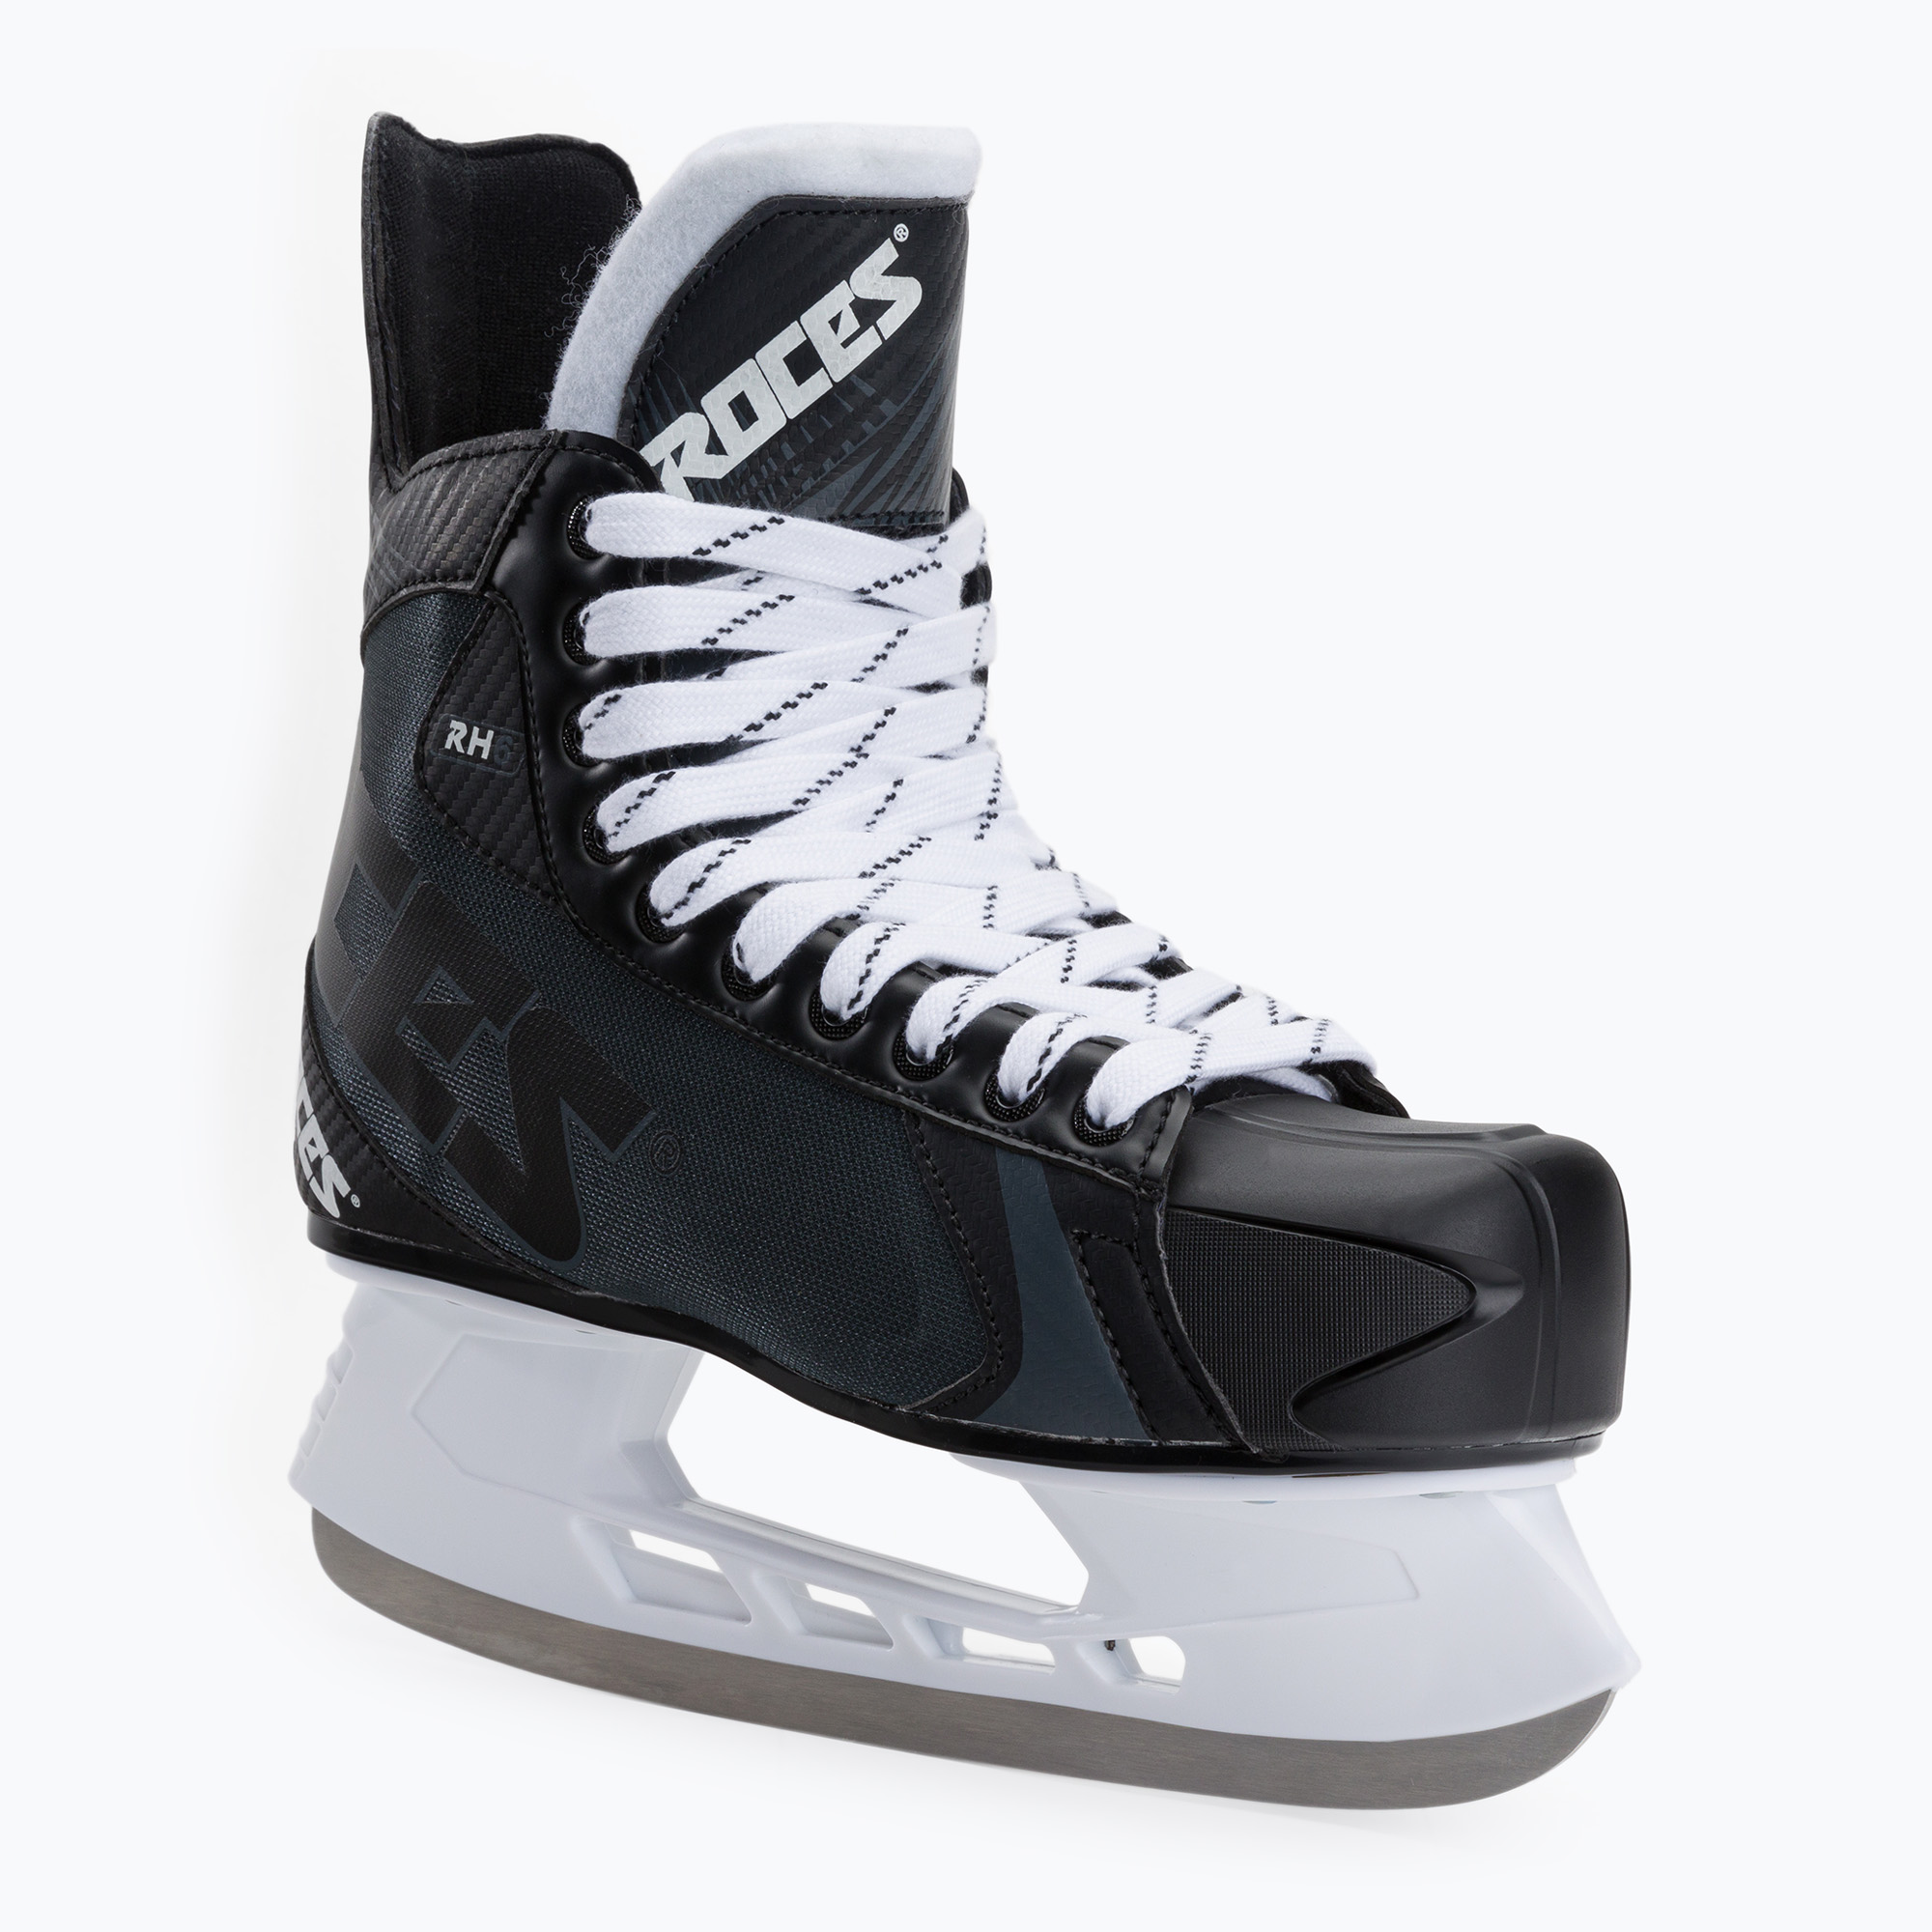 Мъжки кънки за хокей Roces RH6 black 450721